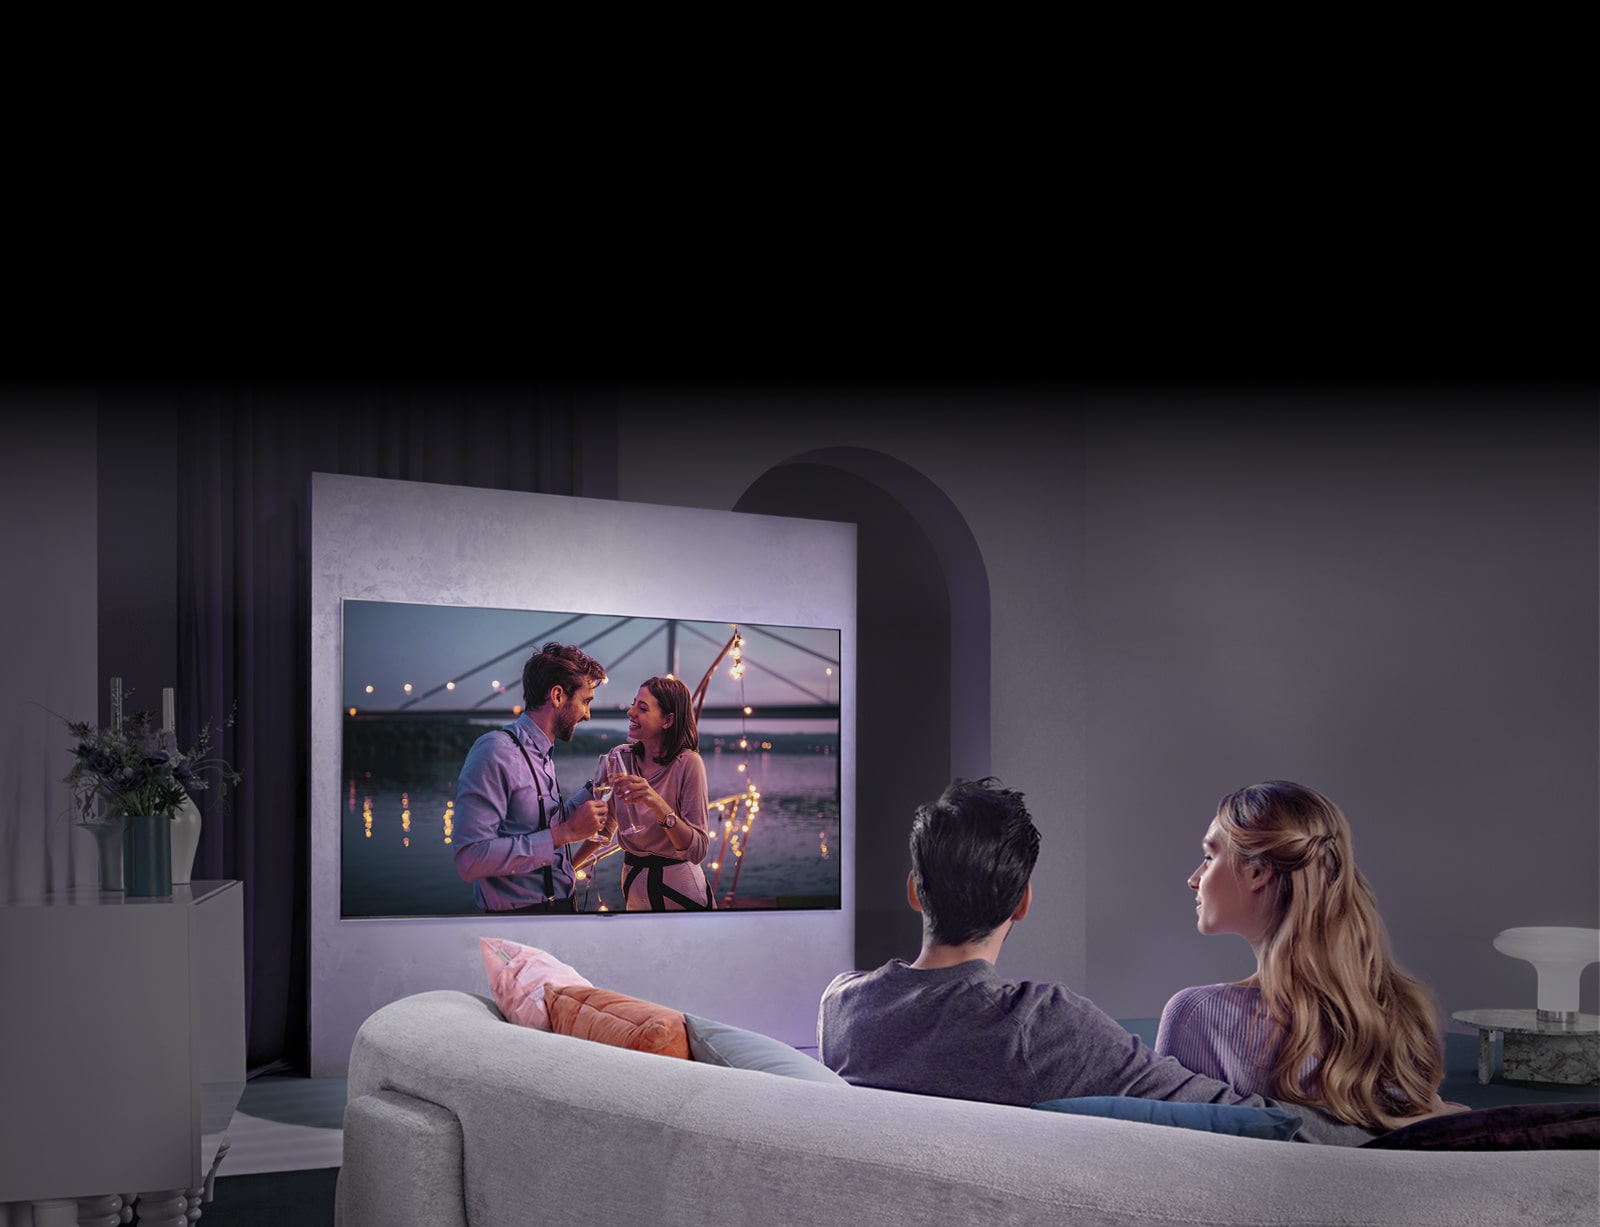 En person sitter på en soffa och tittar på en film som visas på en stor TV på väggen.